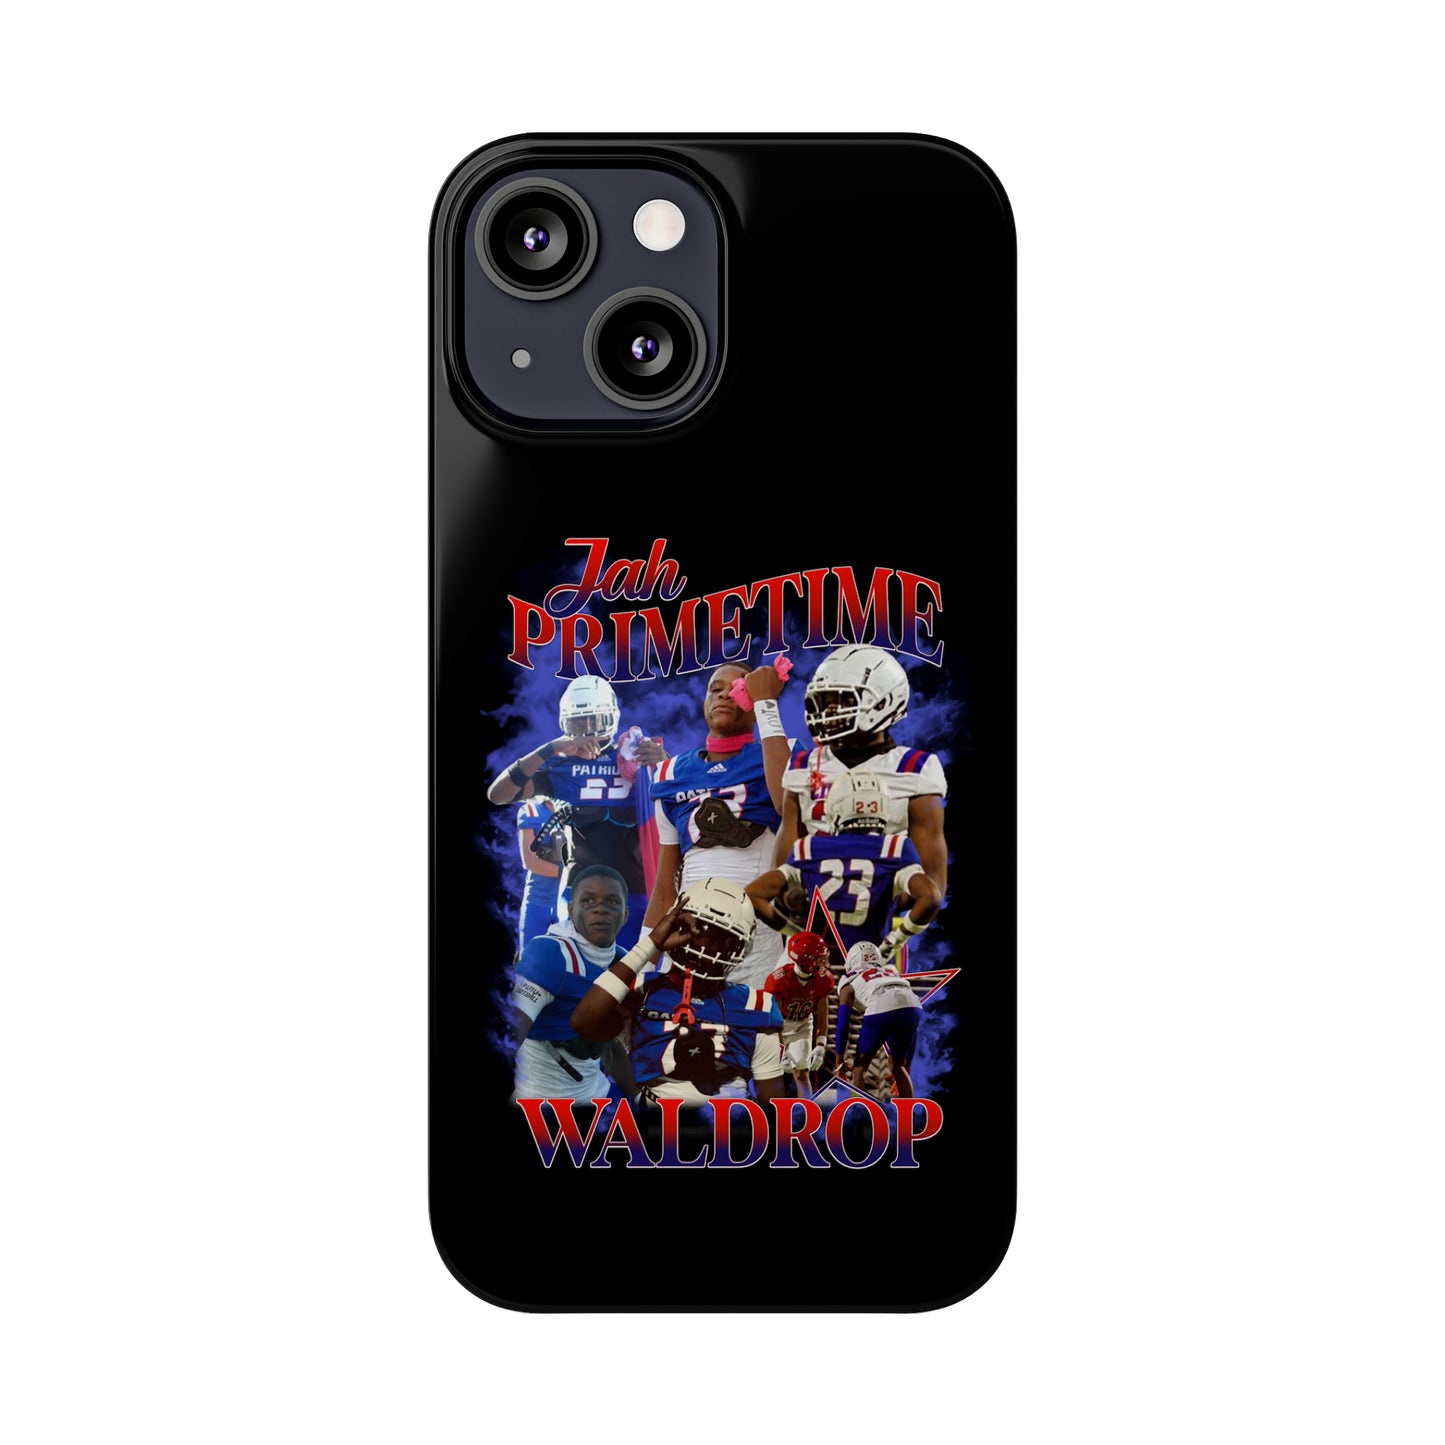 Jah Waldrop Slim Phone Cases